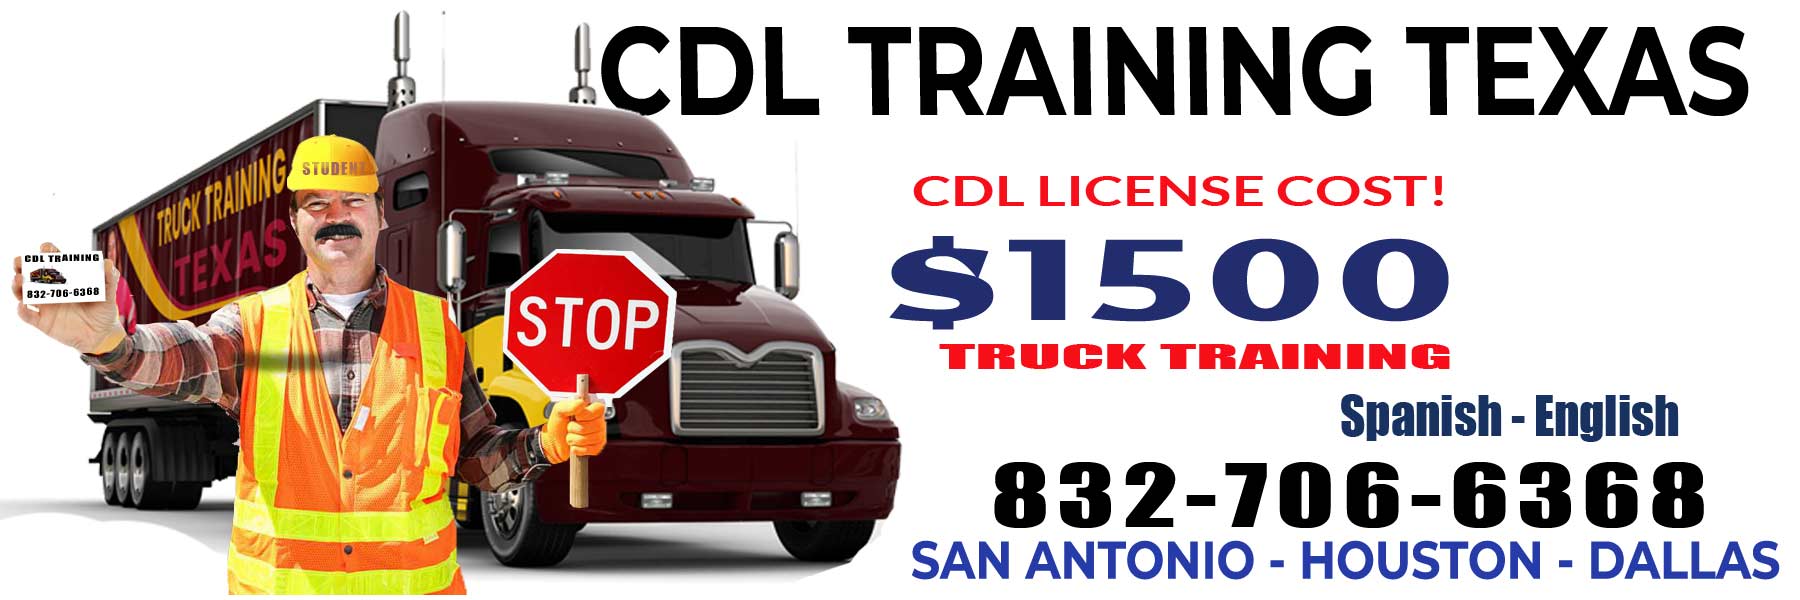 CDL training McAllen TX, Truck Driving Training McAllen, TX $1500